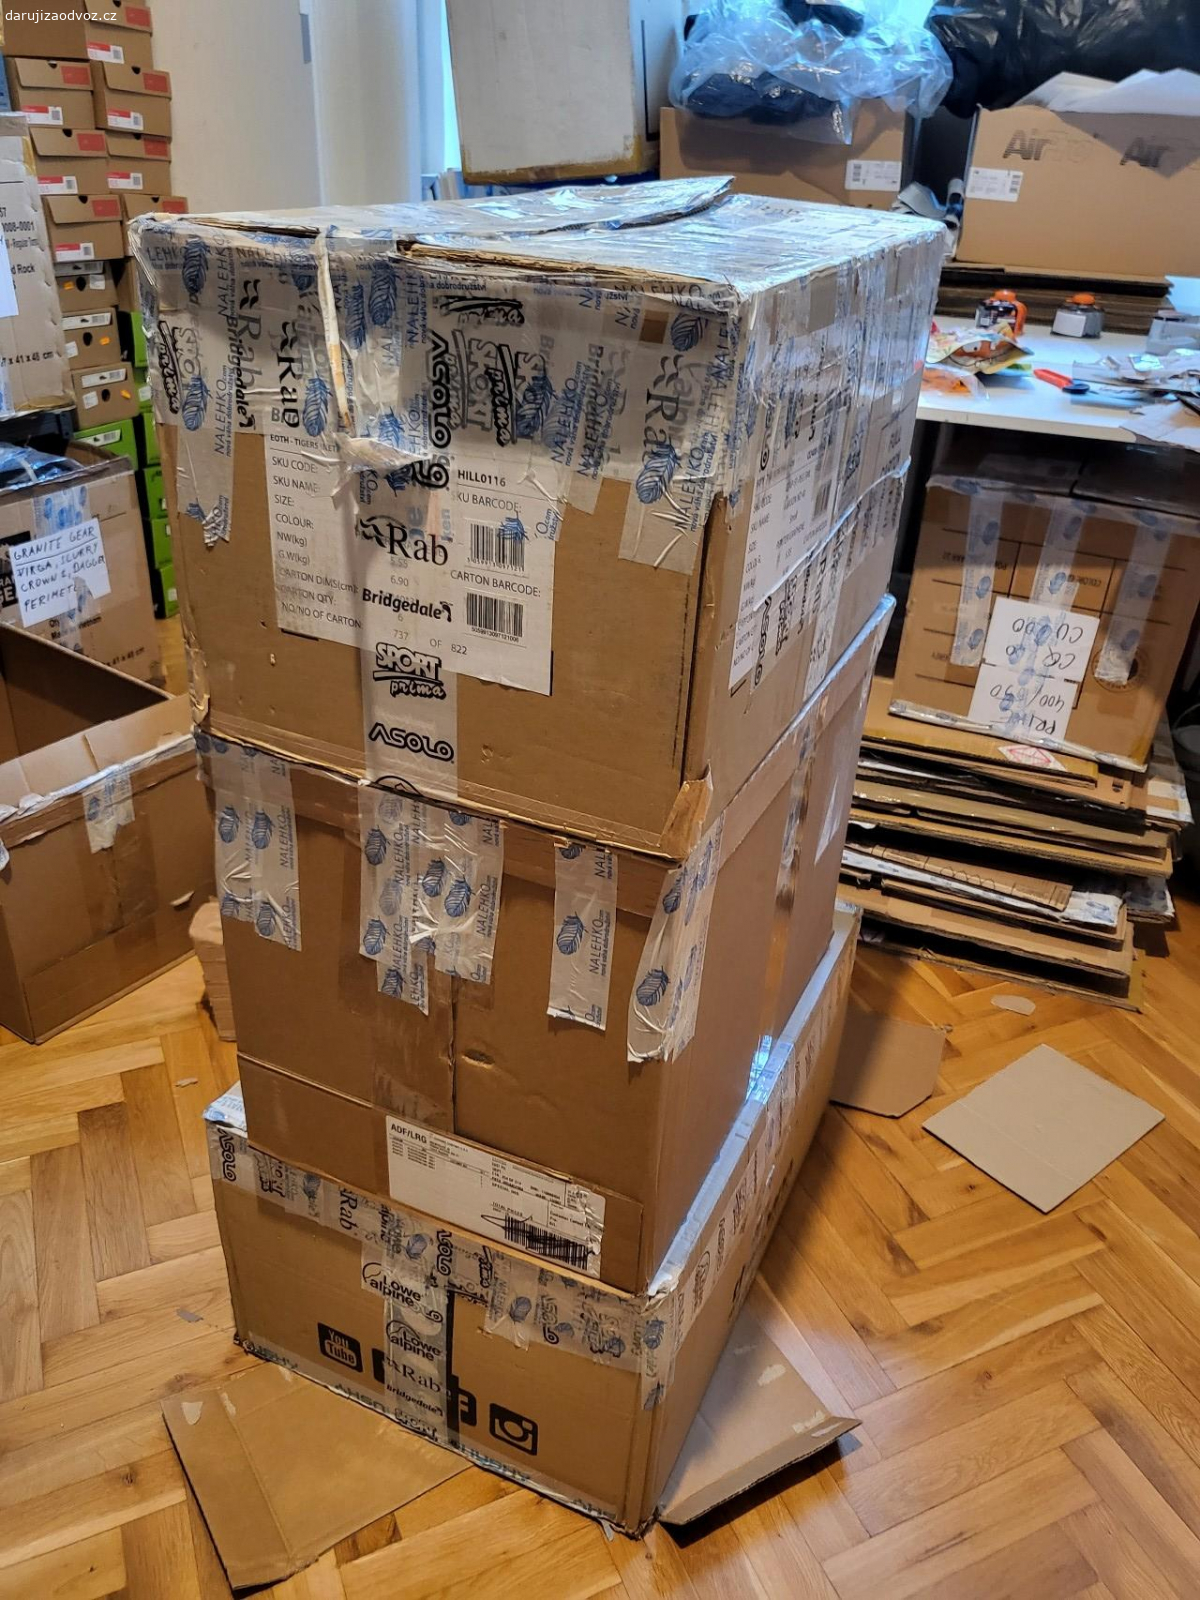 Kartonové krabice ke stěhování. Daruji papírové krabice- vhodné na stěhování, uskladnění věcí, rozměry cca 40×40×70 cm. Předání na Praze 1.